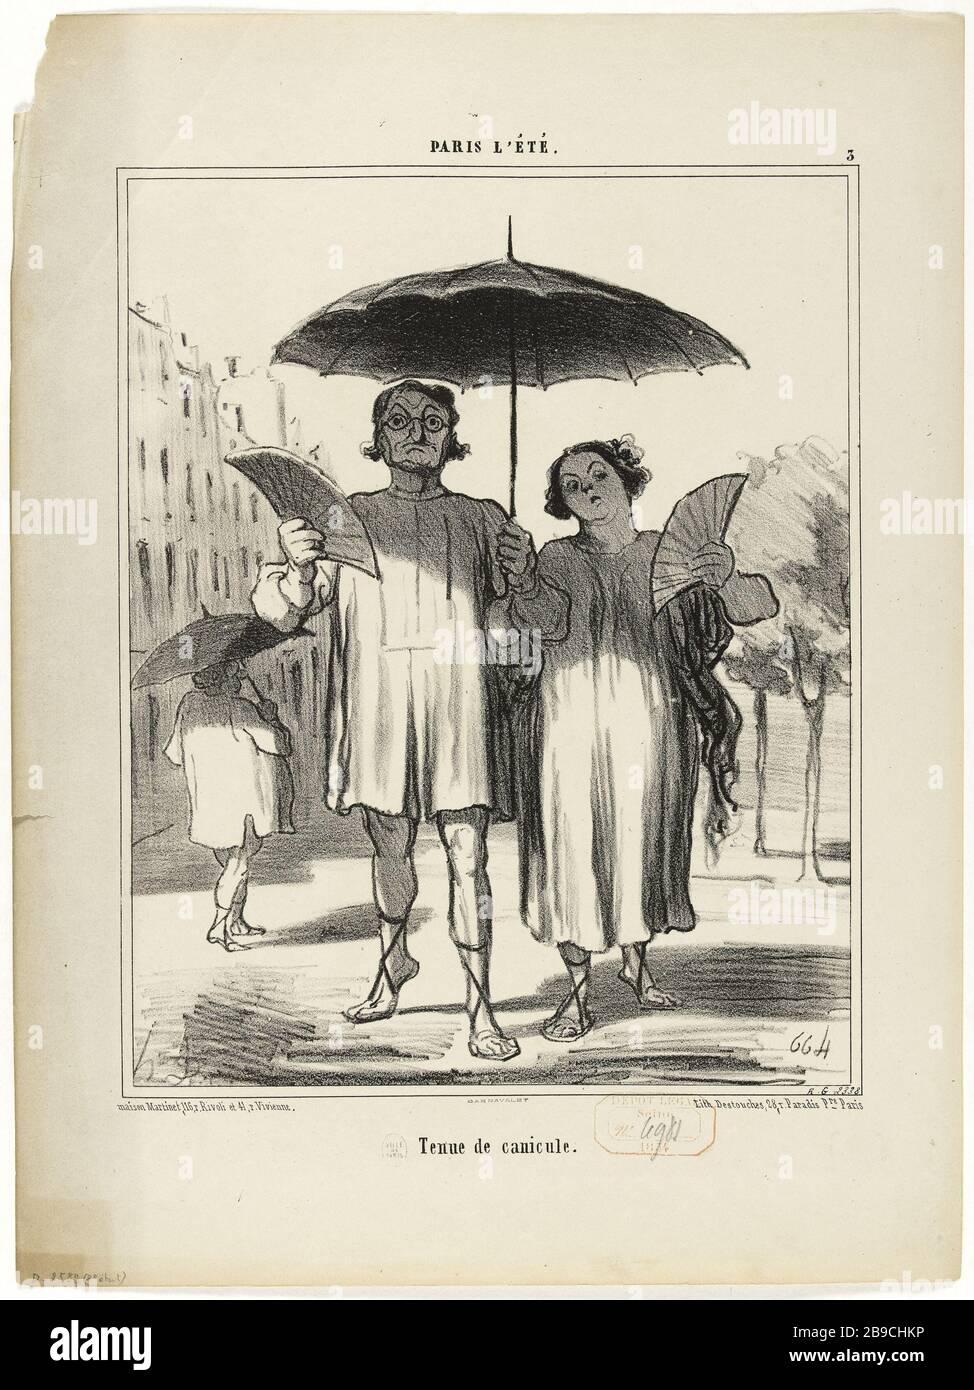 PARISER SOMMER - HITZEWELLE DES WIDERSTANDS (PL.3) Honoré Daumier (1808-1879).'Paris l'été - tenue de Canicule (pl.3)'. Lithographie en noir. Paris, musée Carnavalet. Stockfoto